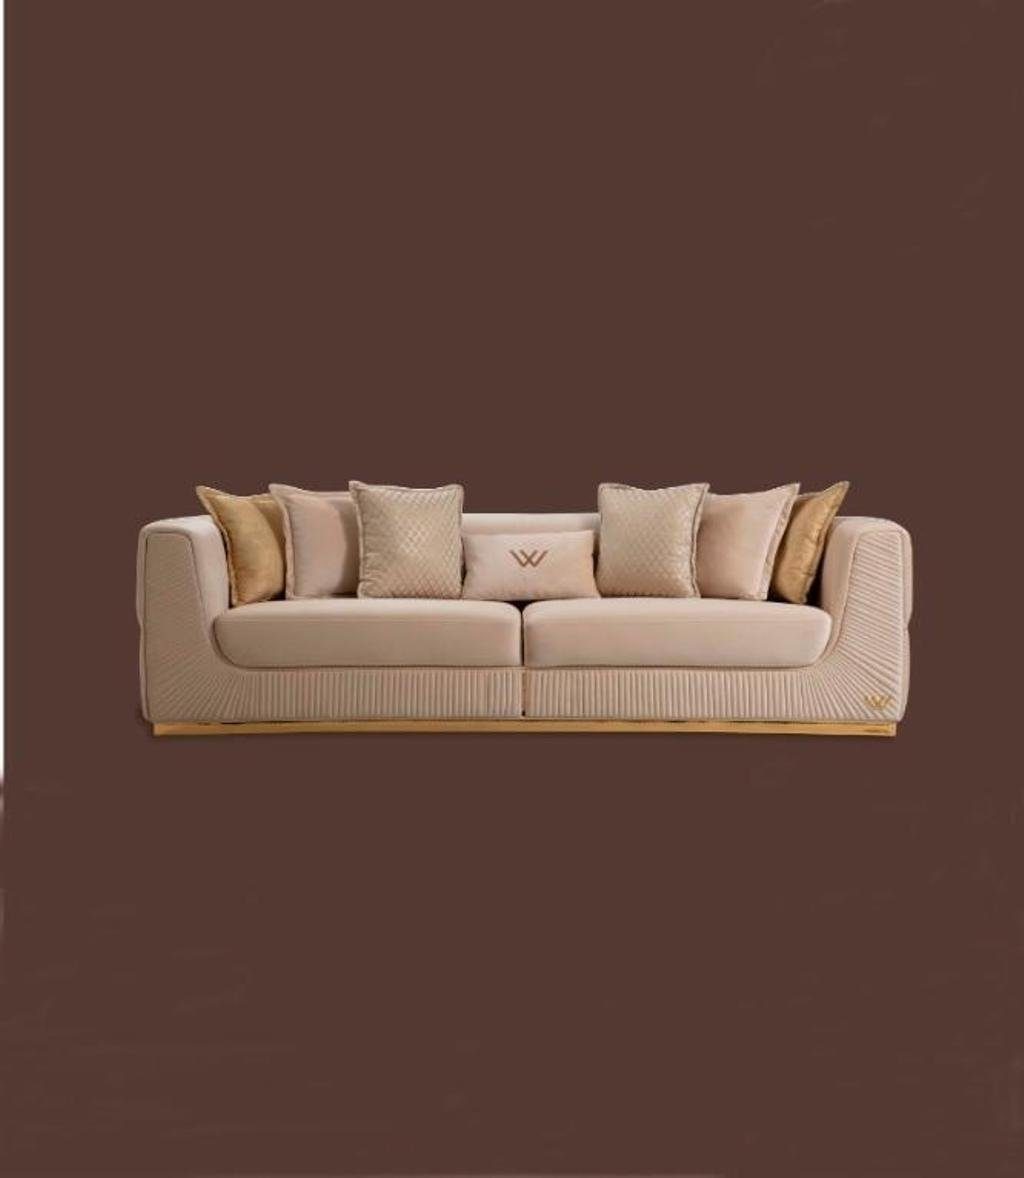 JVmoebel 4-Sitzer Sofa 4 Sitzer Design Sofas Polster Couchen Leder Relax Sitz Möbel, 1 Teile, Made in Europa